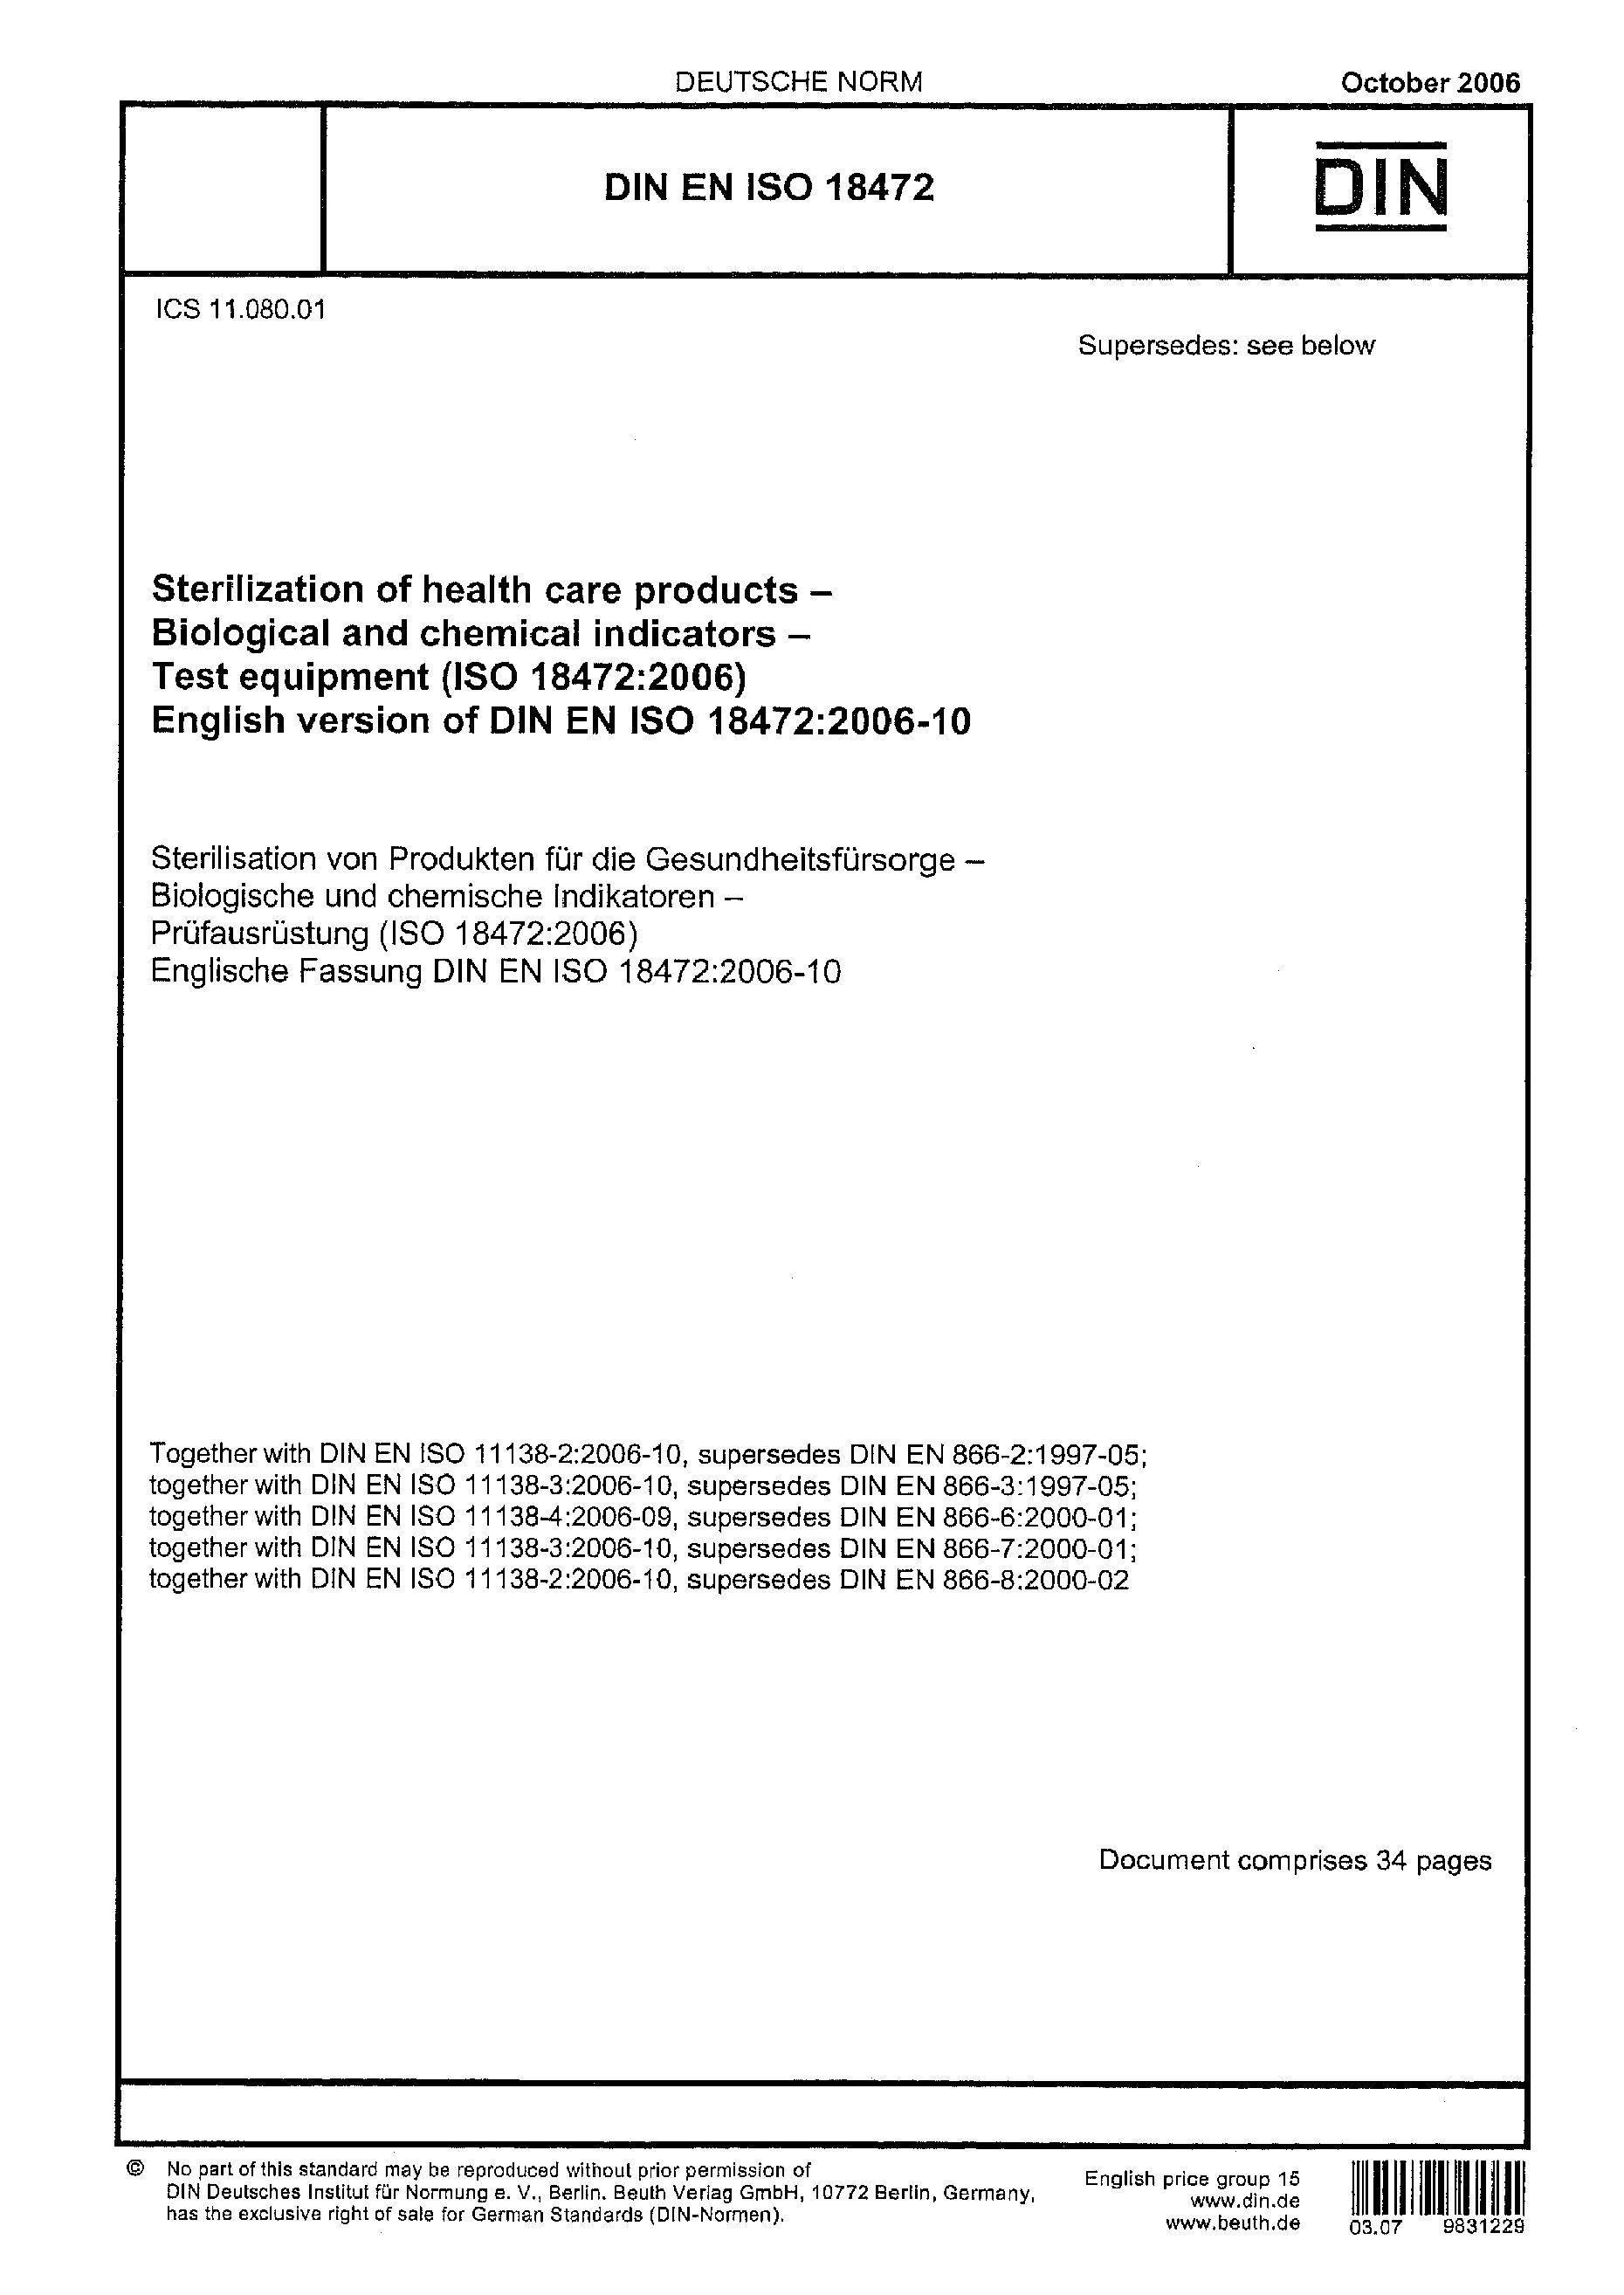 DIN EN ISO 18472-2006